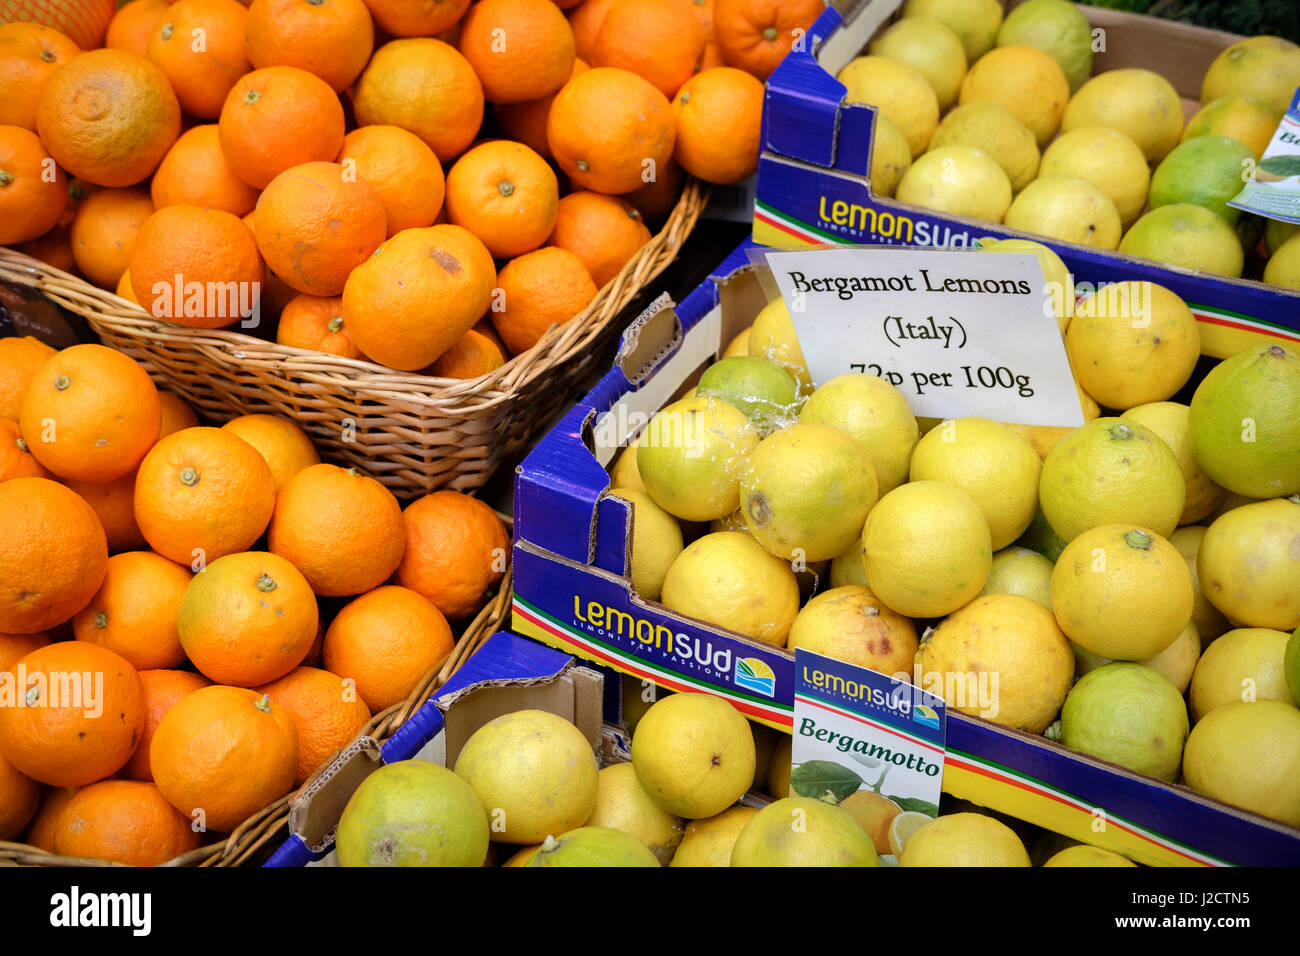 Bergamot Lemons and oranges Stock Photo